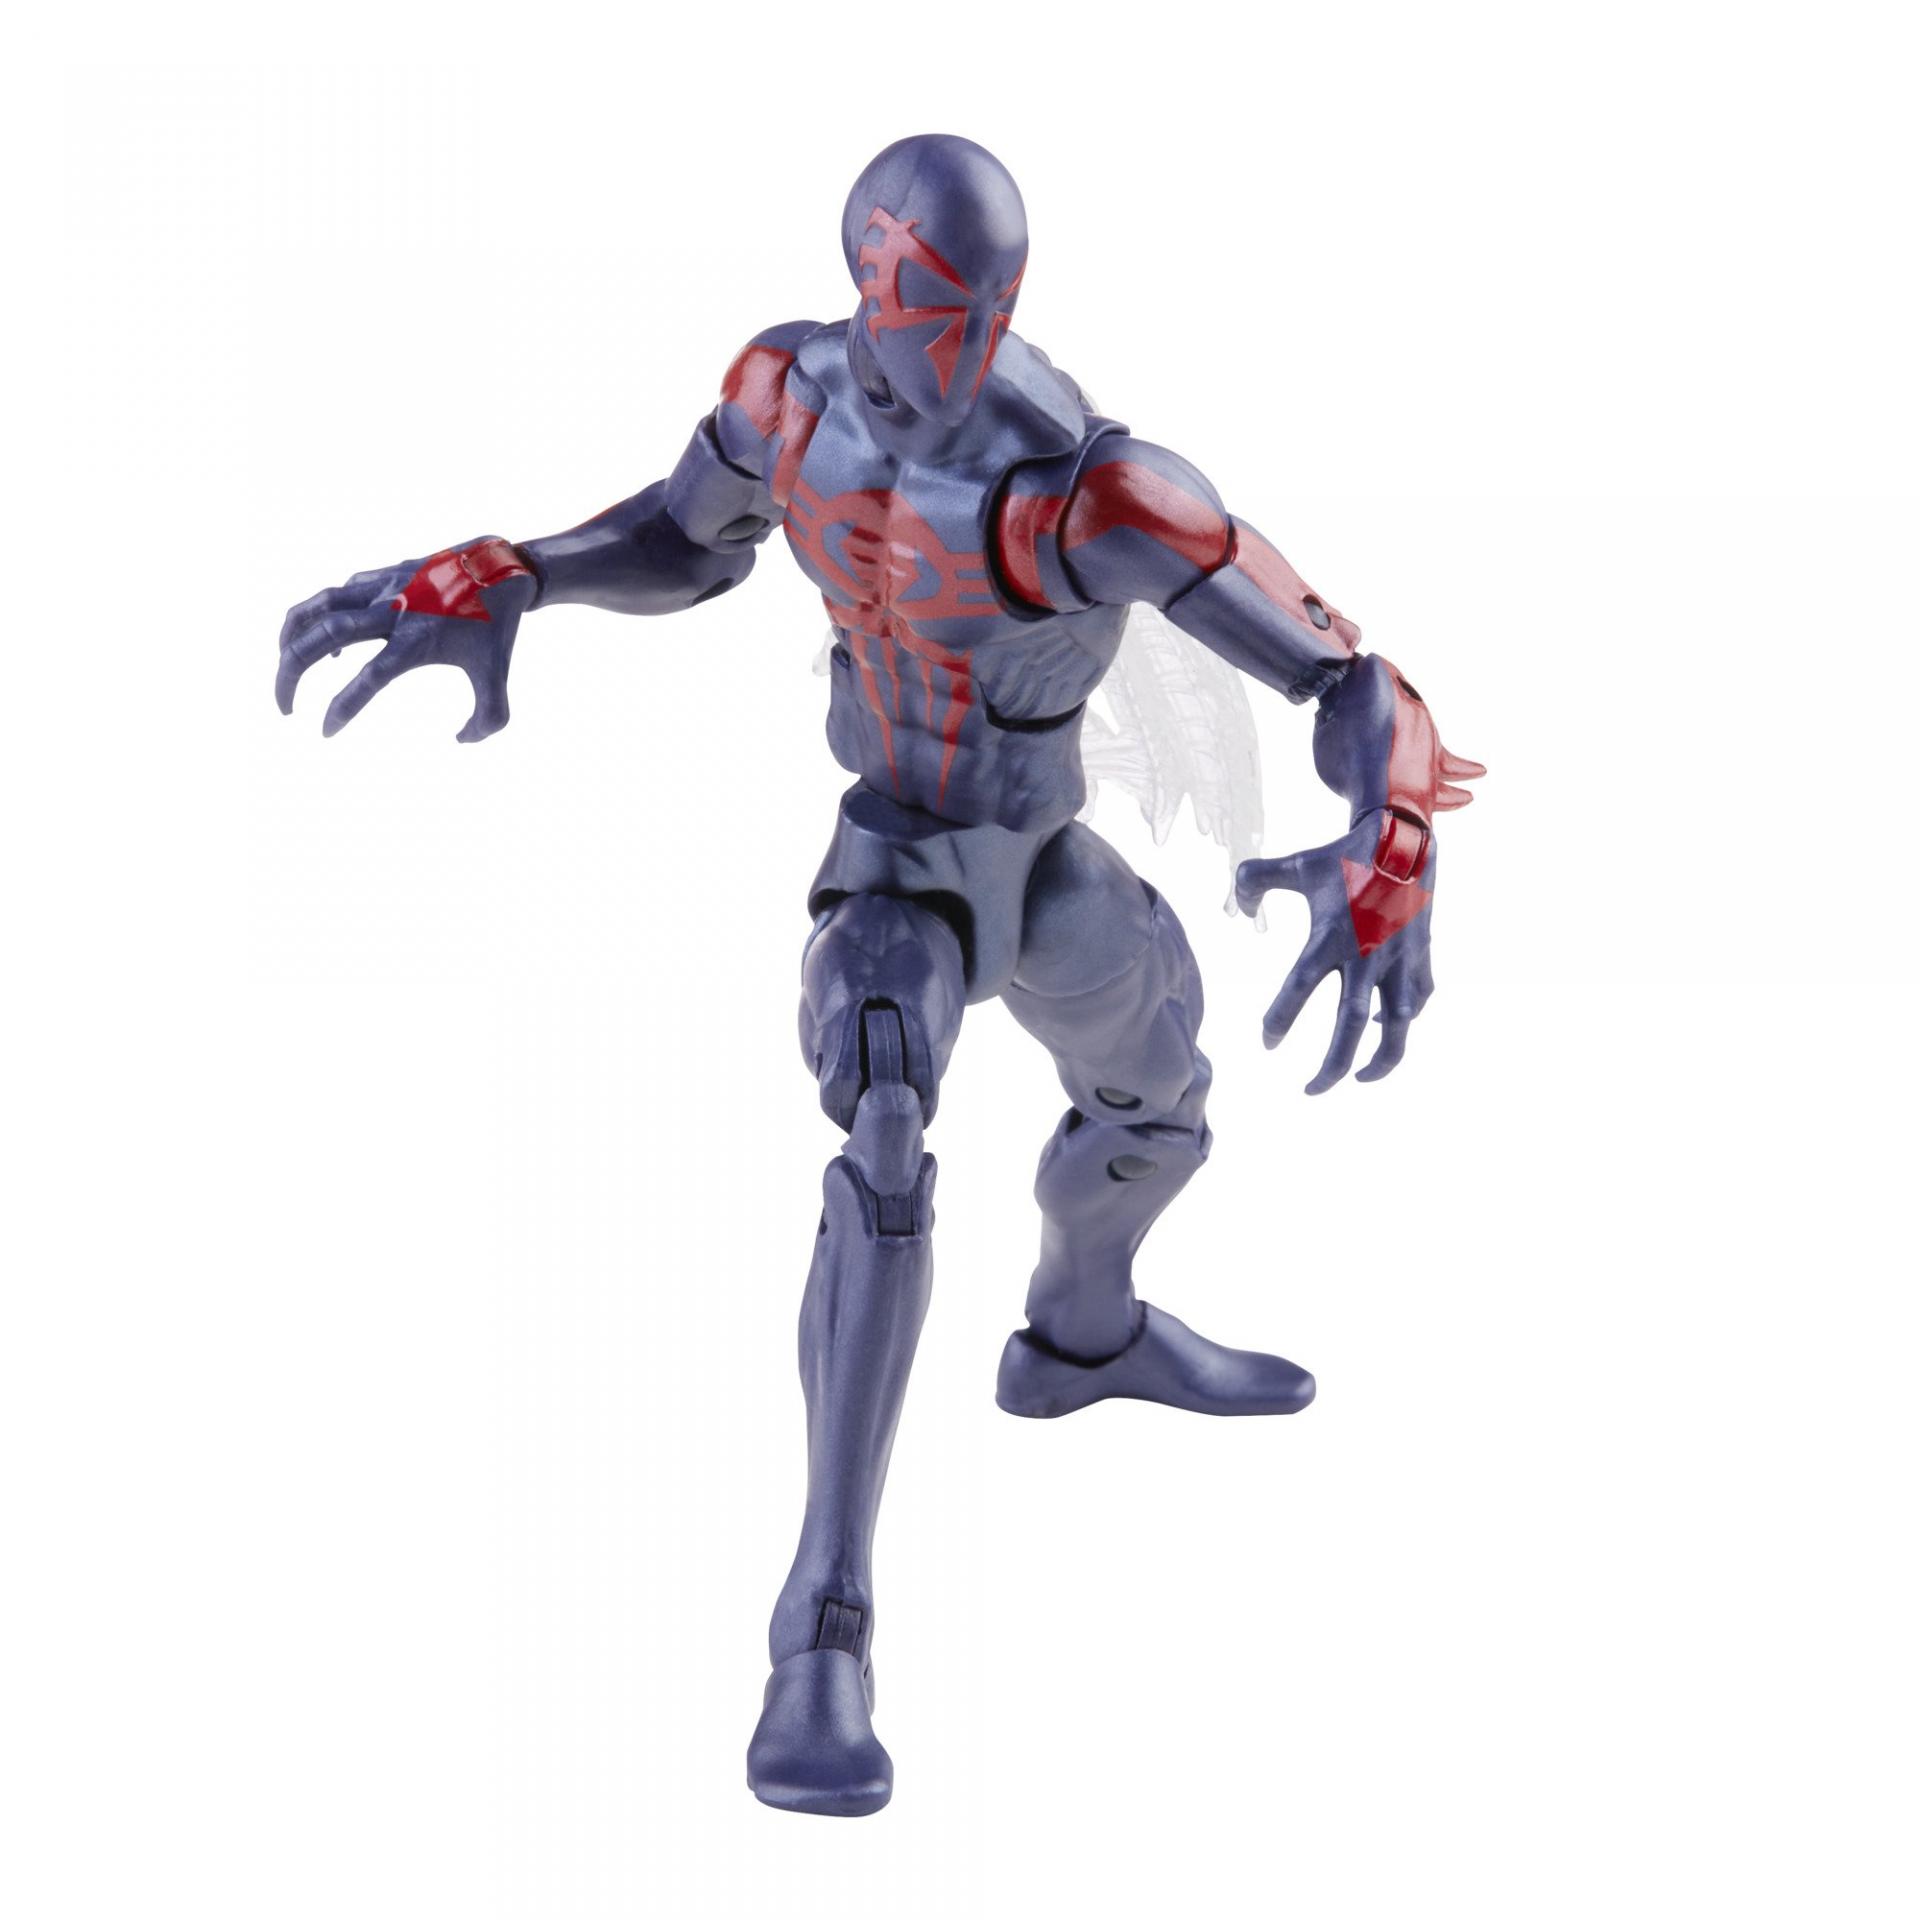 Marvel legends series hasbro spider man 2099 6